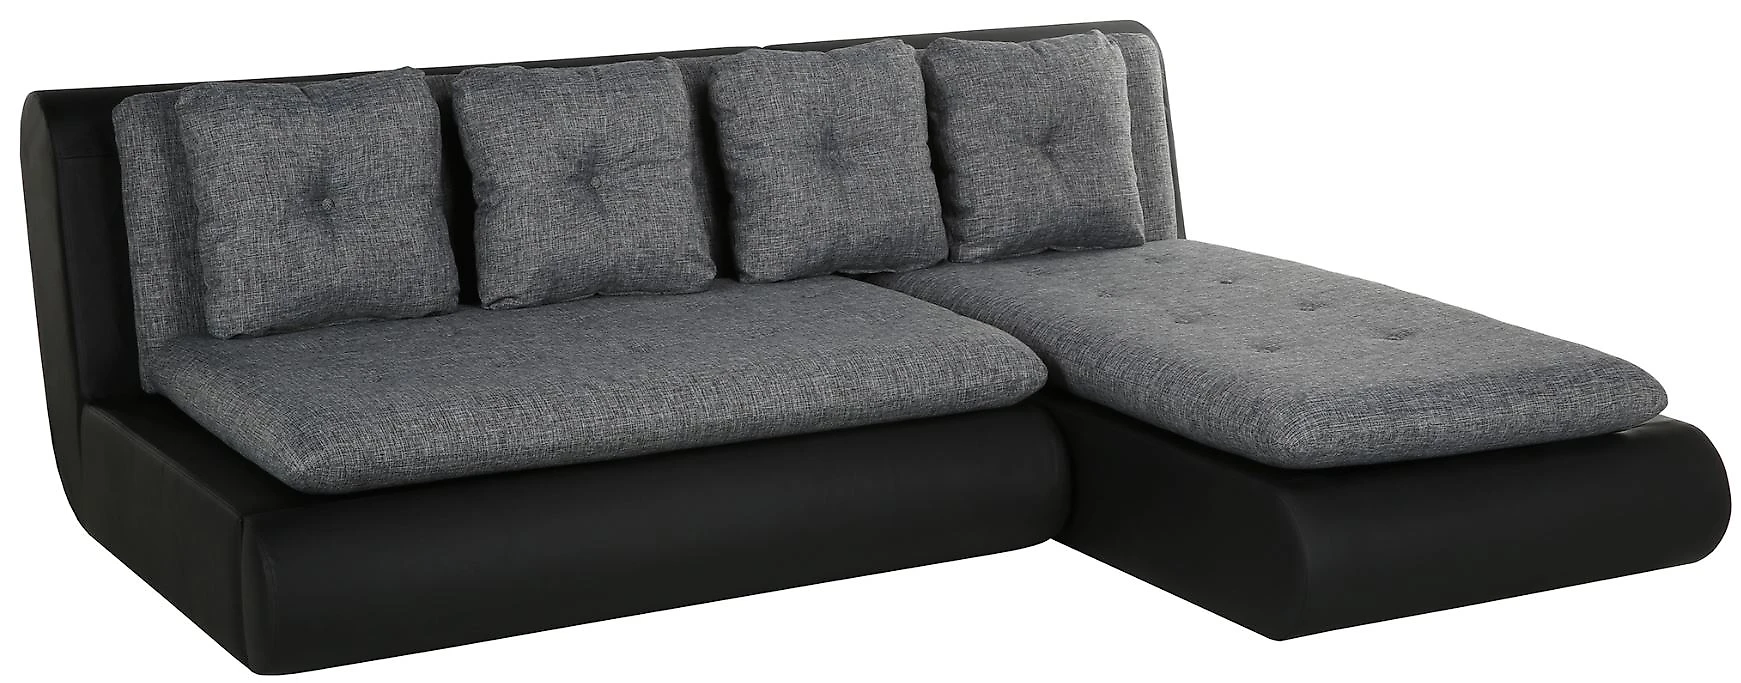 Угловой диван для спальни Кормак Мини Грей